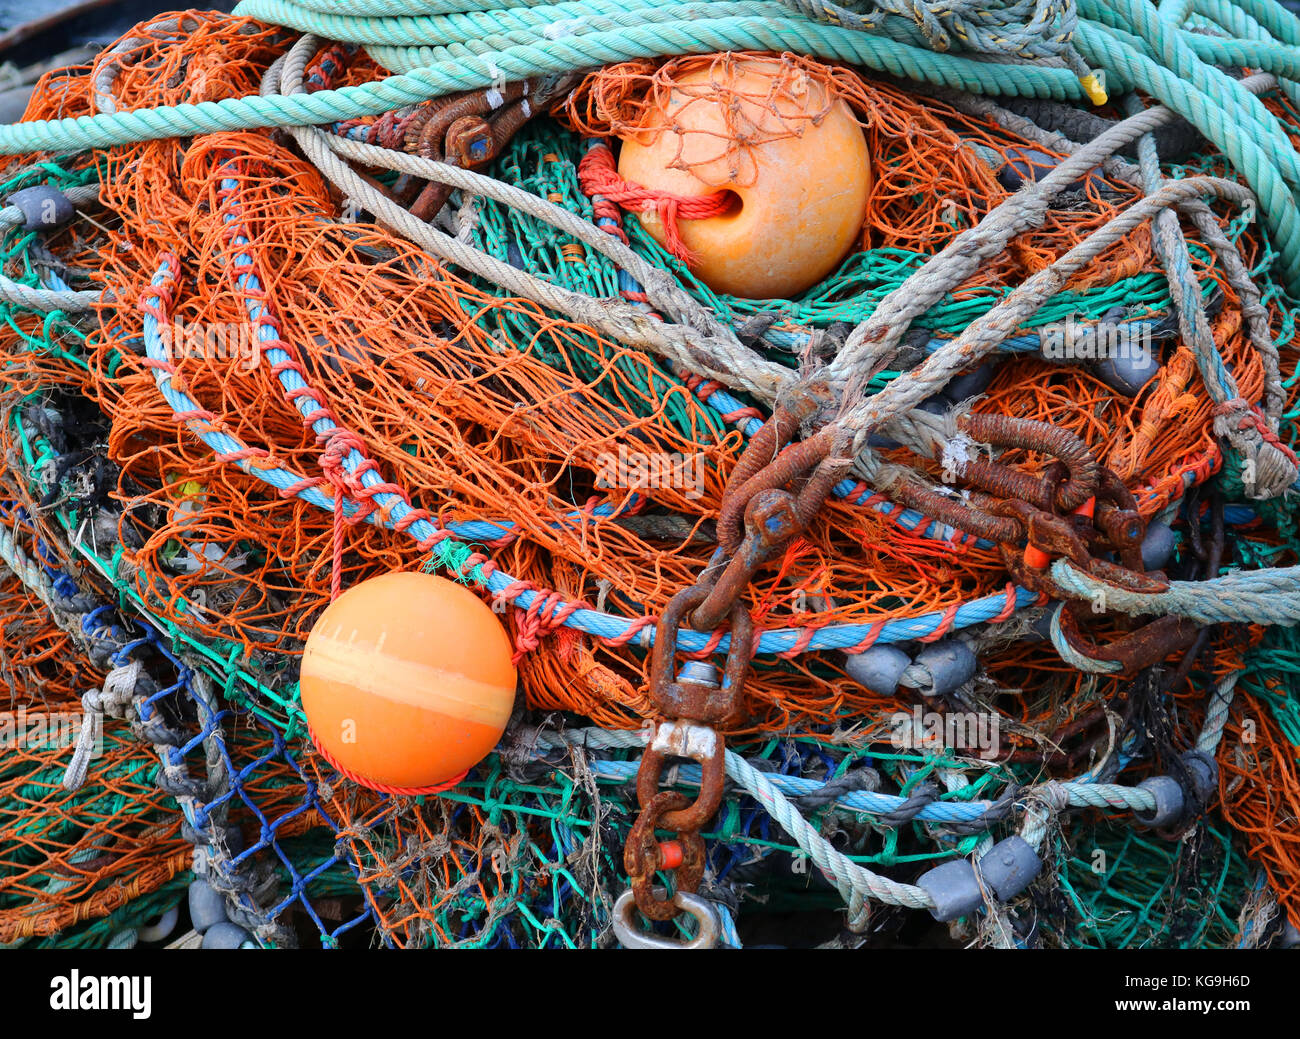 Reti da pesca immagini e fotografie stock ad alta risoluzione - Alamy